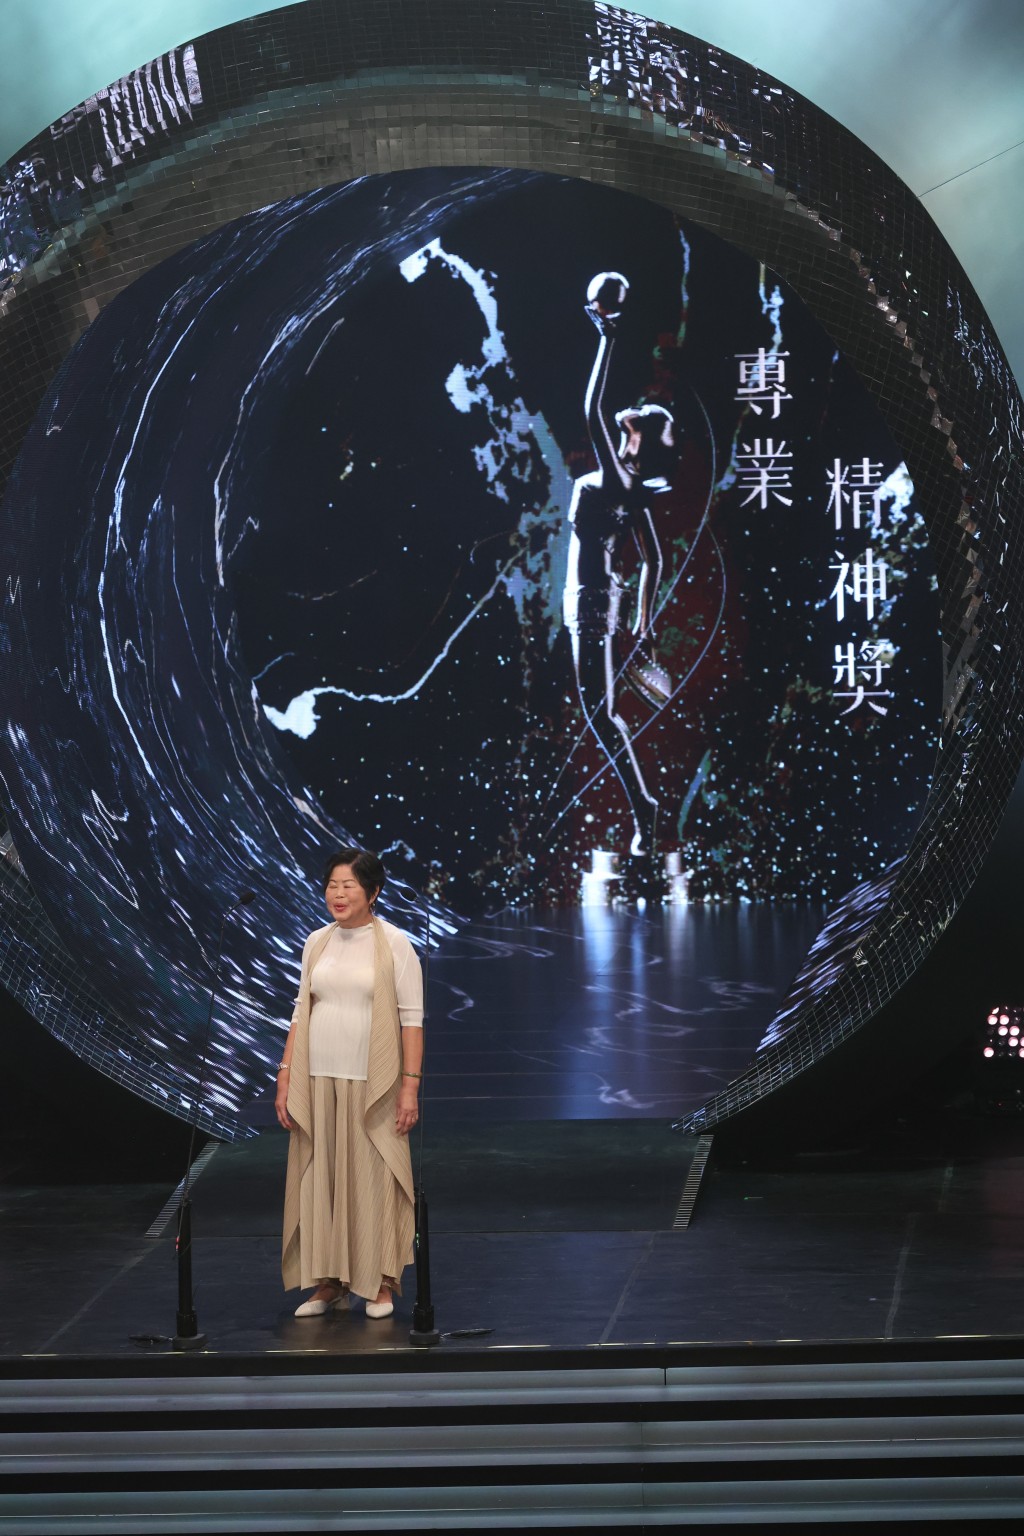 從事電影服裝管理逾40年的「萍姐」唐萍獲得「專業精神獎」。